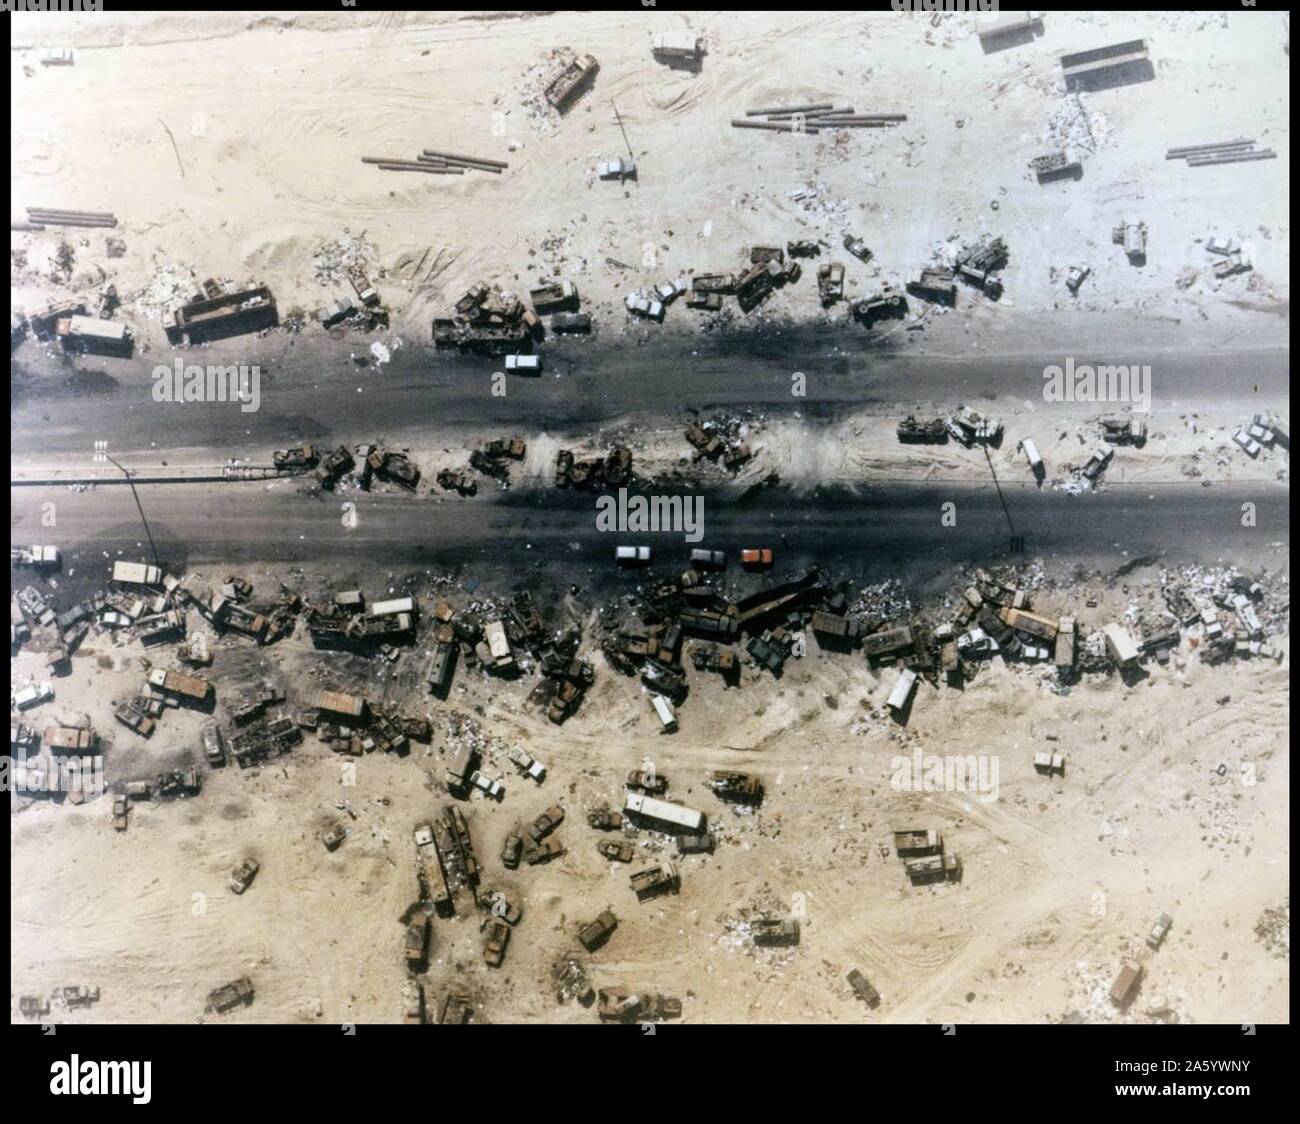 Photo de l 'autoroute de la mort", la suite de bombardements des forces américaines les forces irakiennes en retraite, Koweït, 1991 Banque D'Images